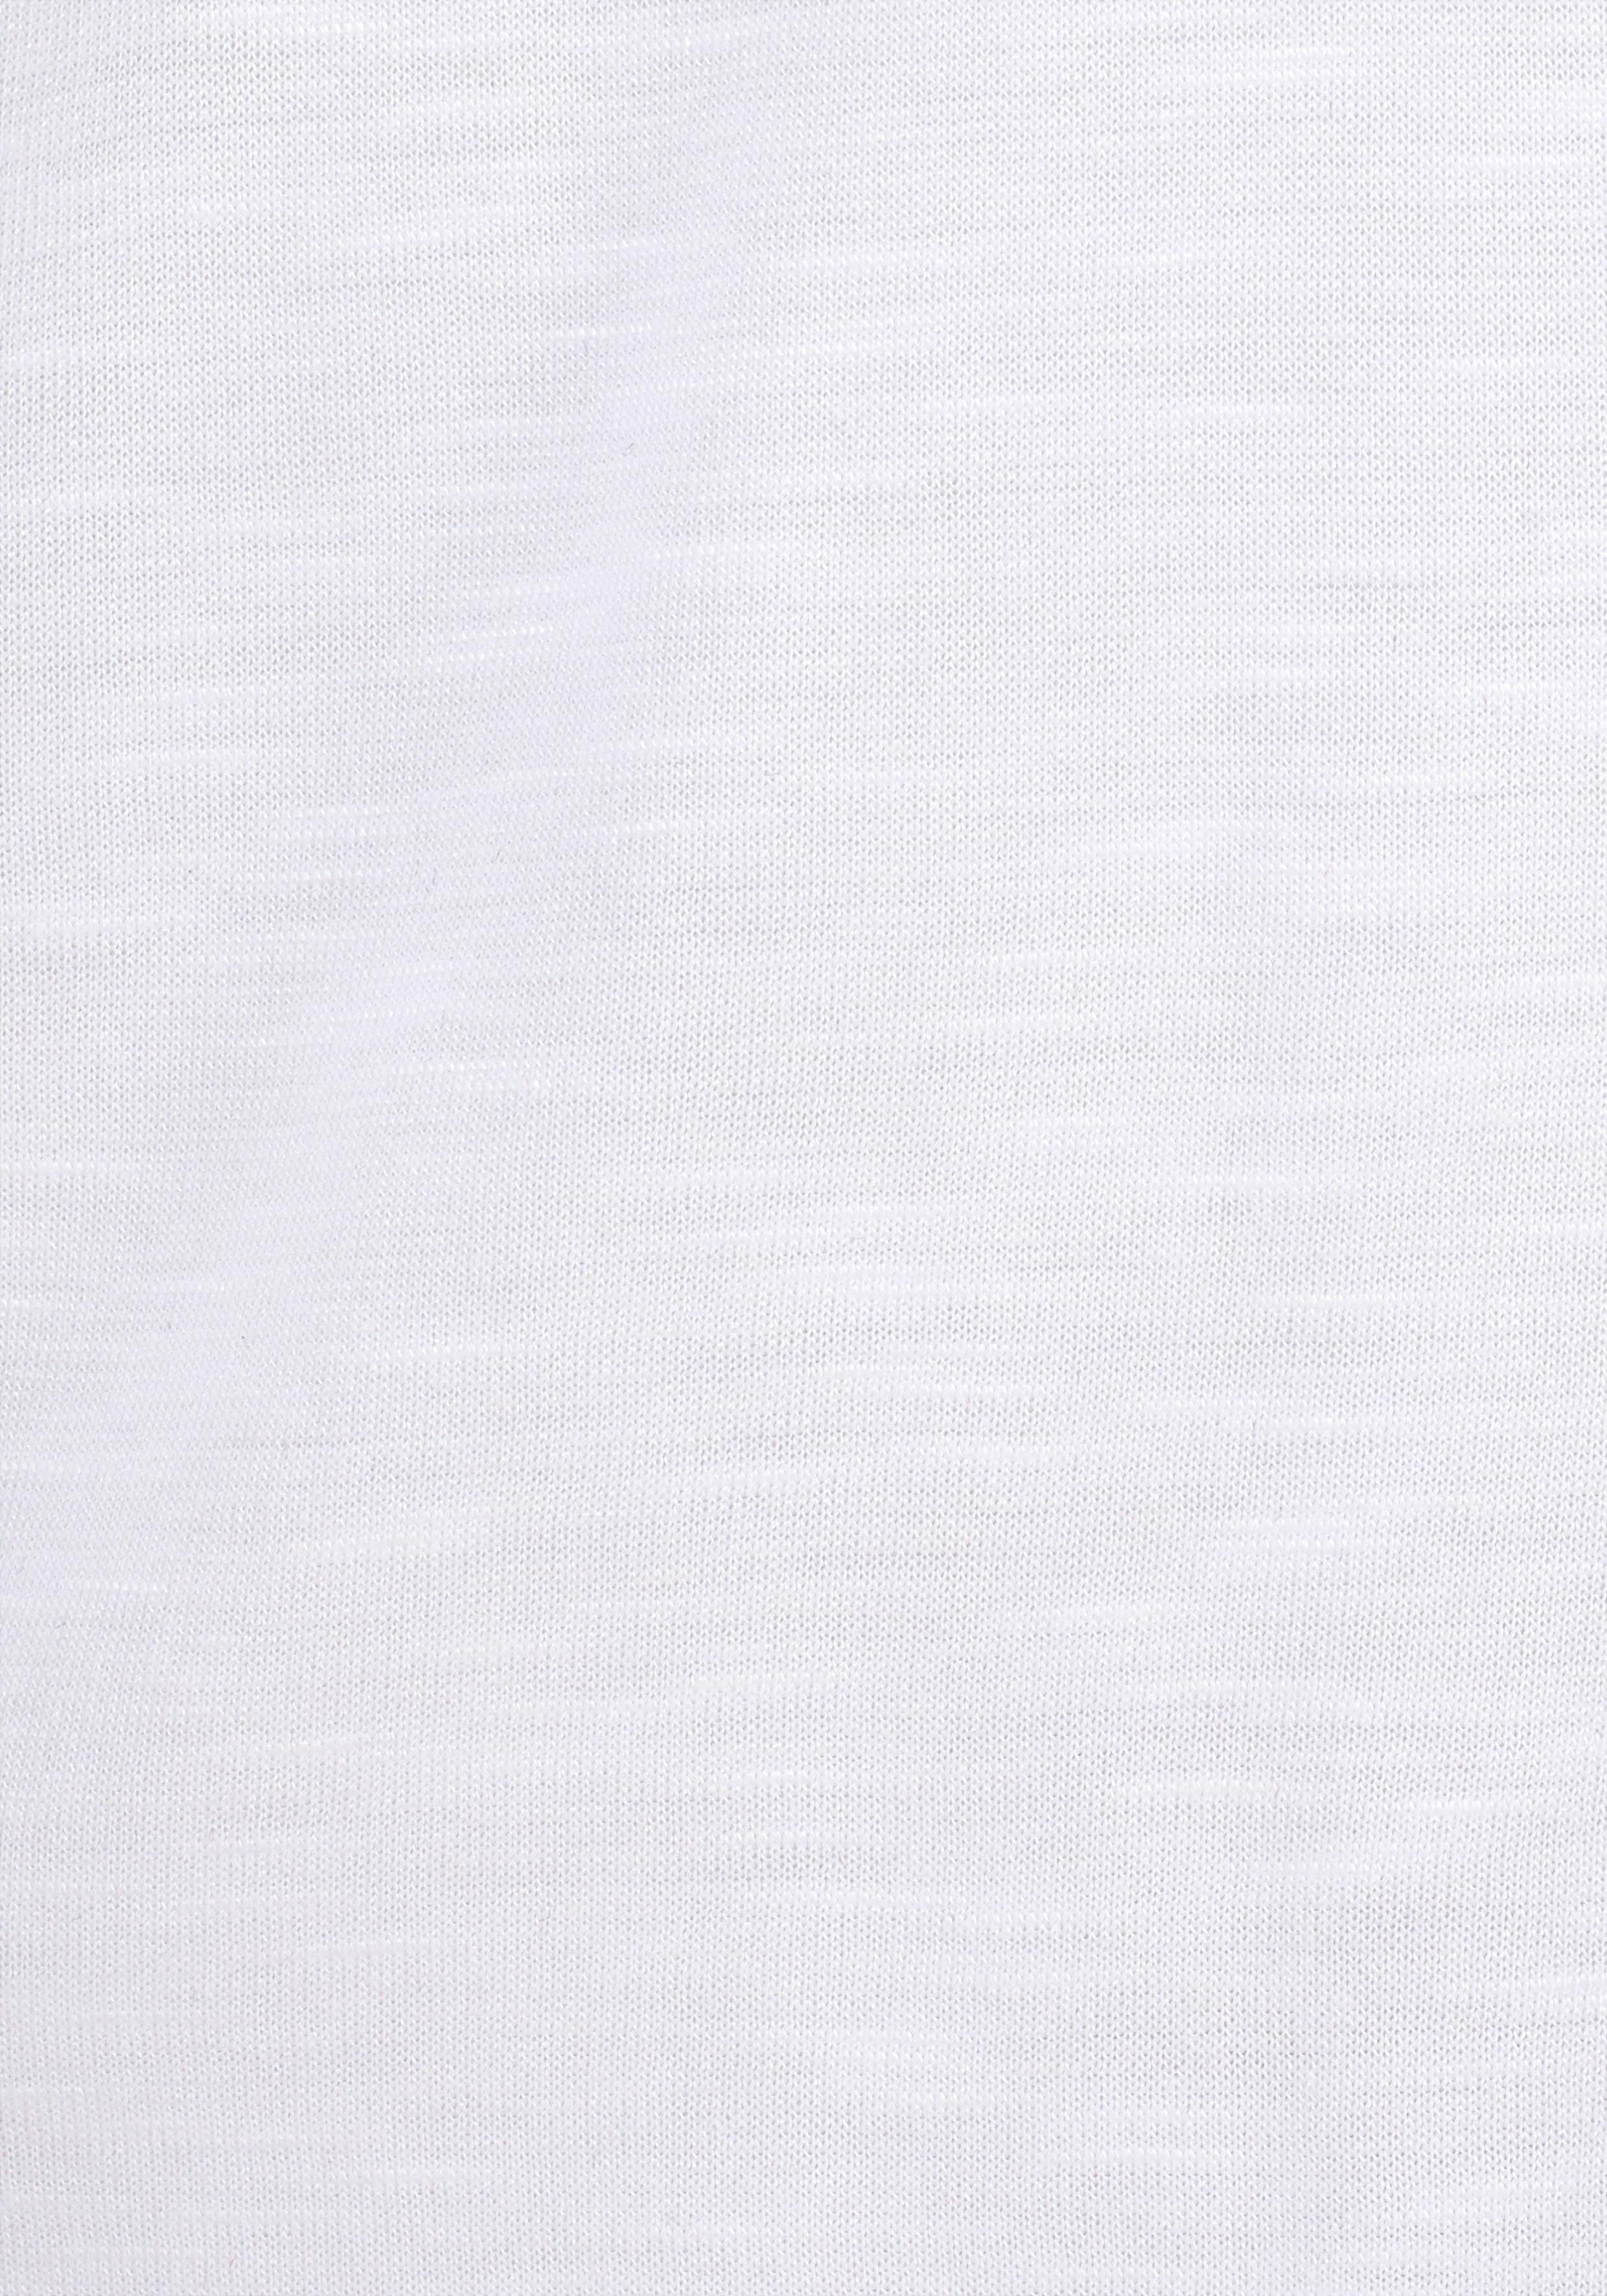 LASCANA Strandshirt mit Print casual weiß glänzendem Effekt, und Ethno-Look